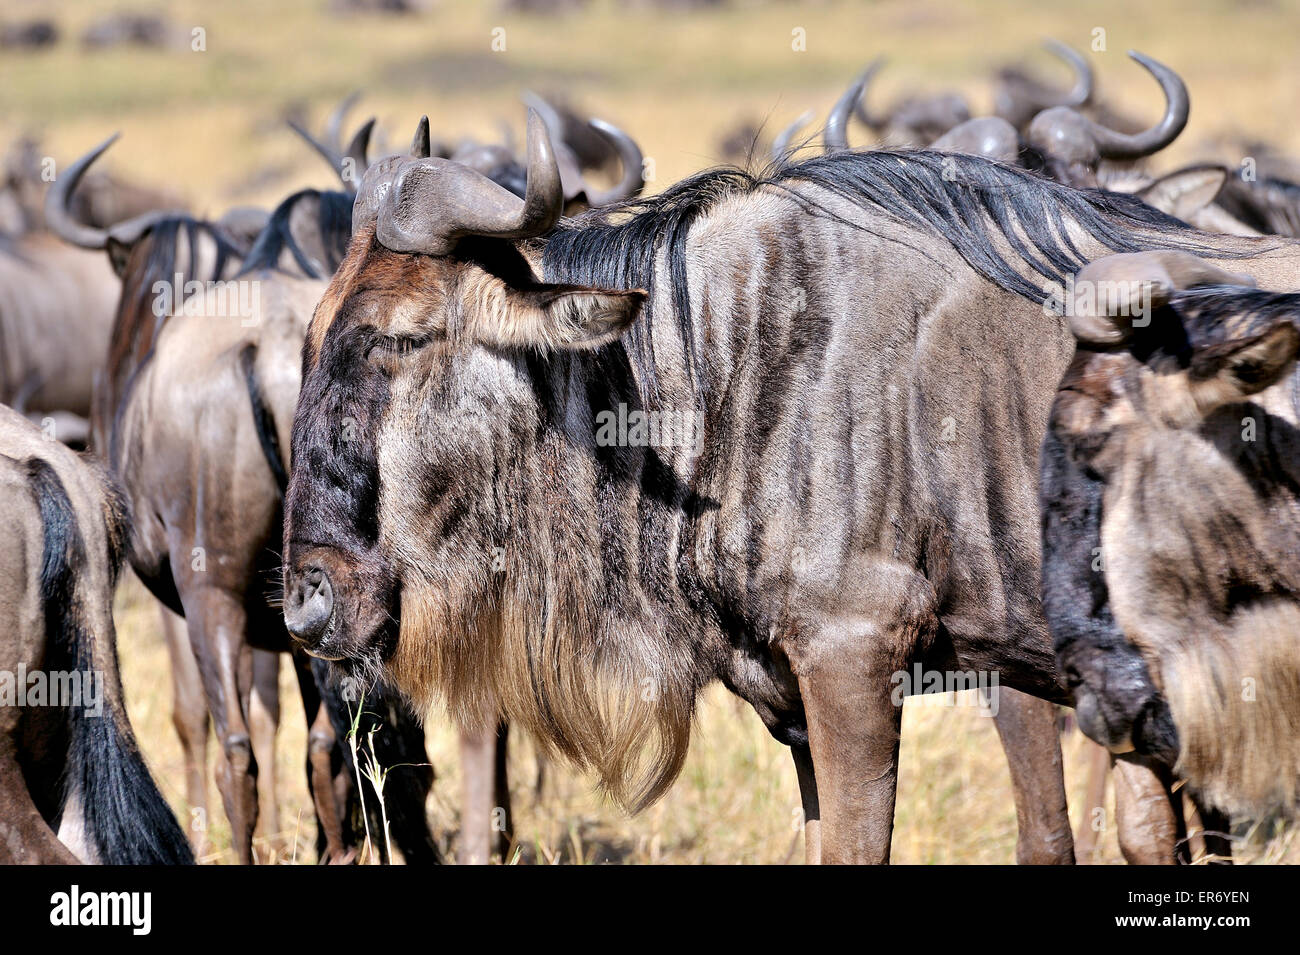 Wildebeests in Masai Mara Stock Photo